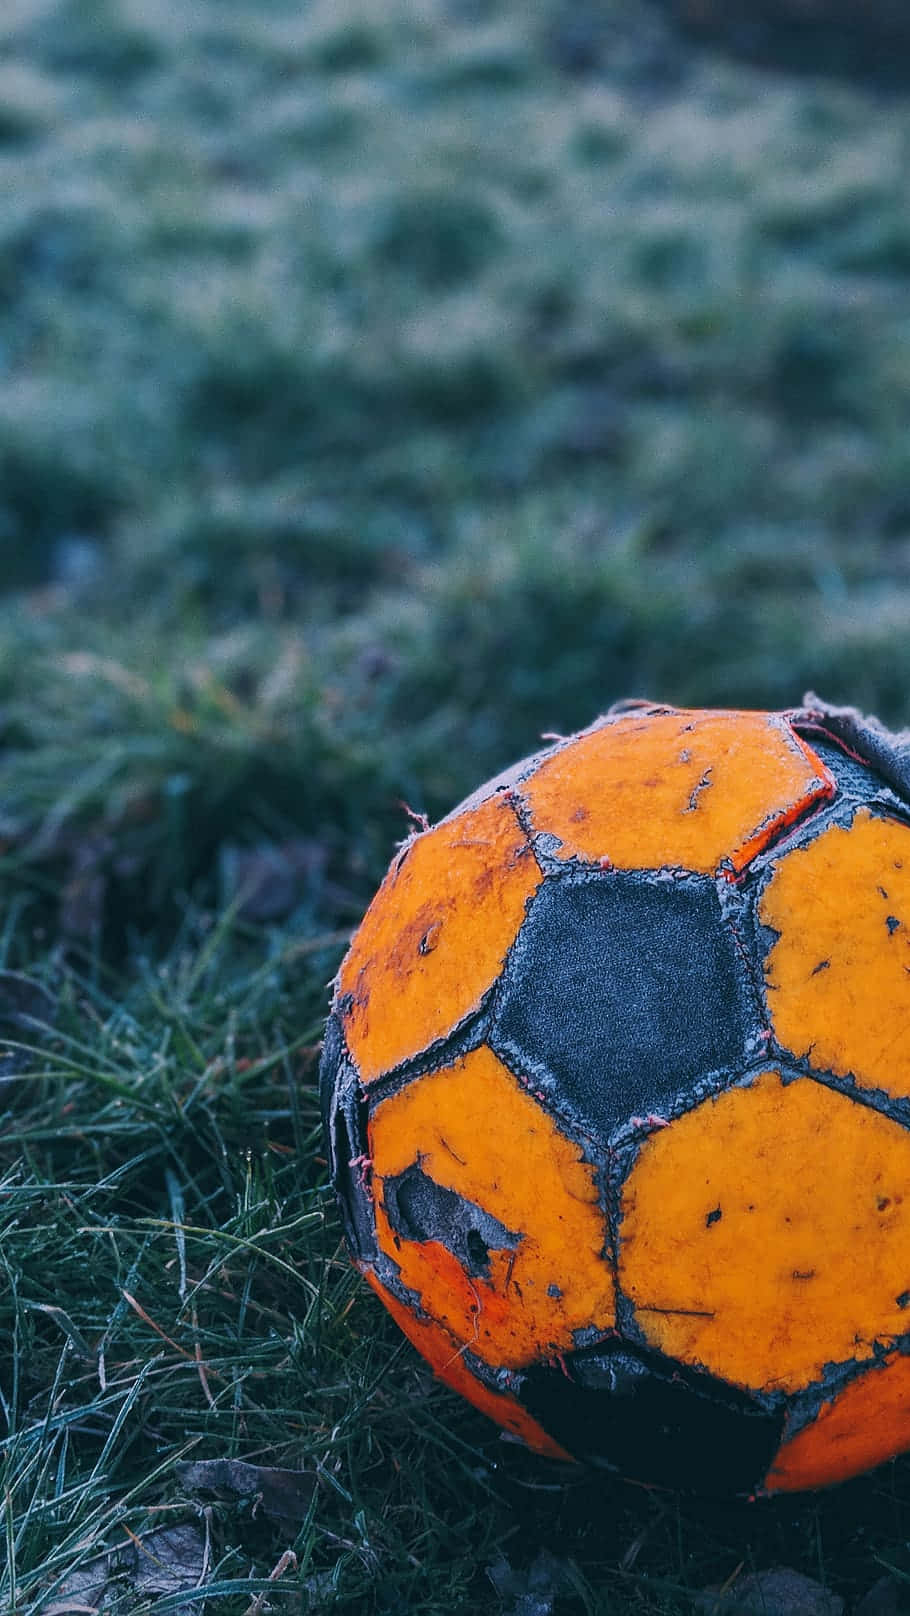 Enorange Fotboll Som Sitter På Gräset.